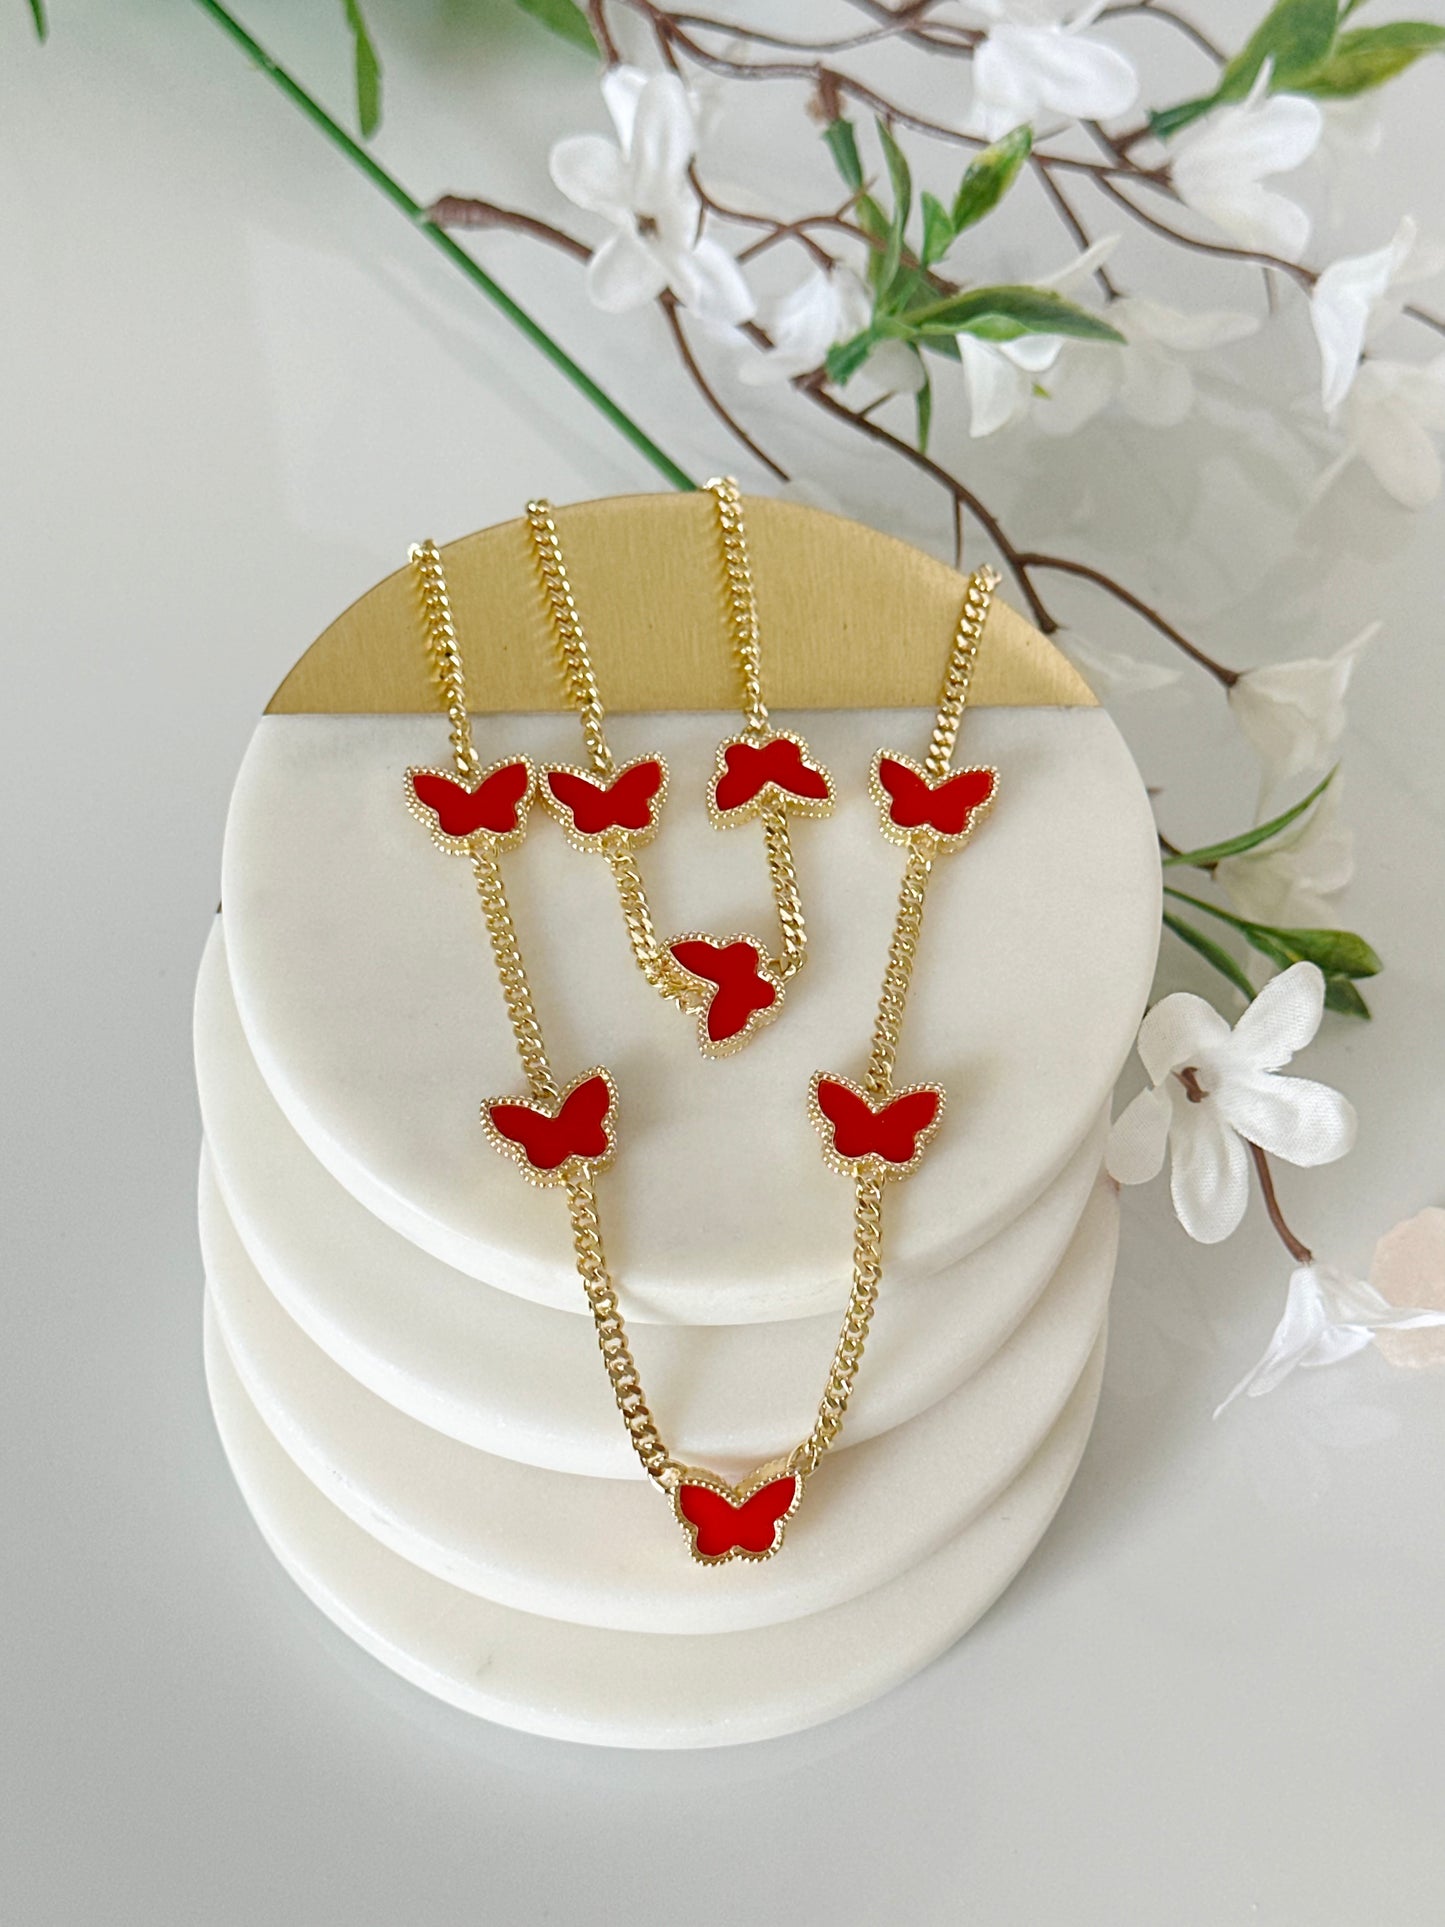 Butterfly Necklace and Bracelet Set - Adorn U